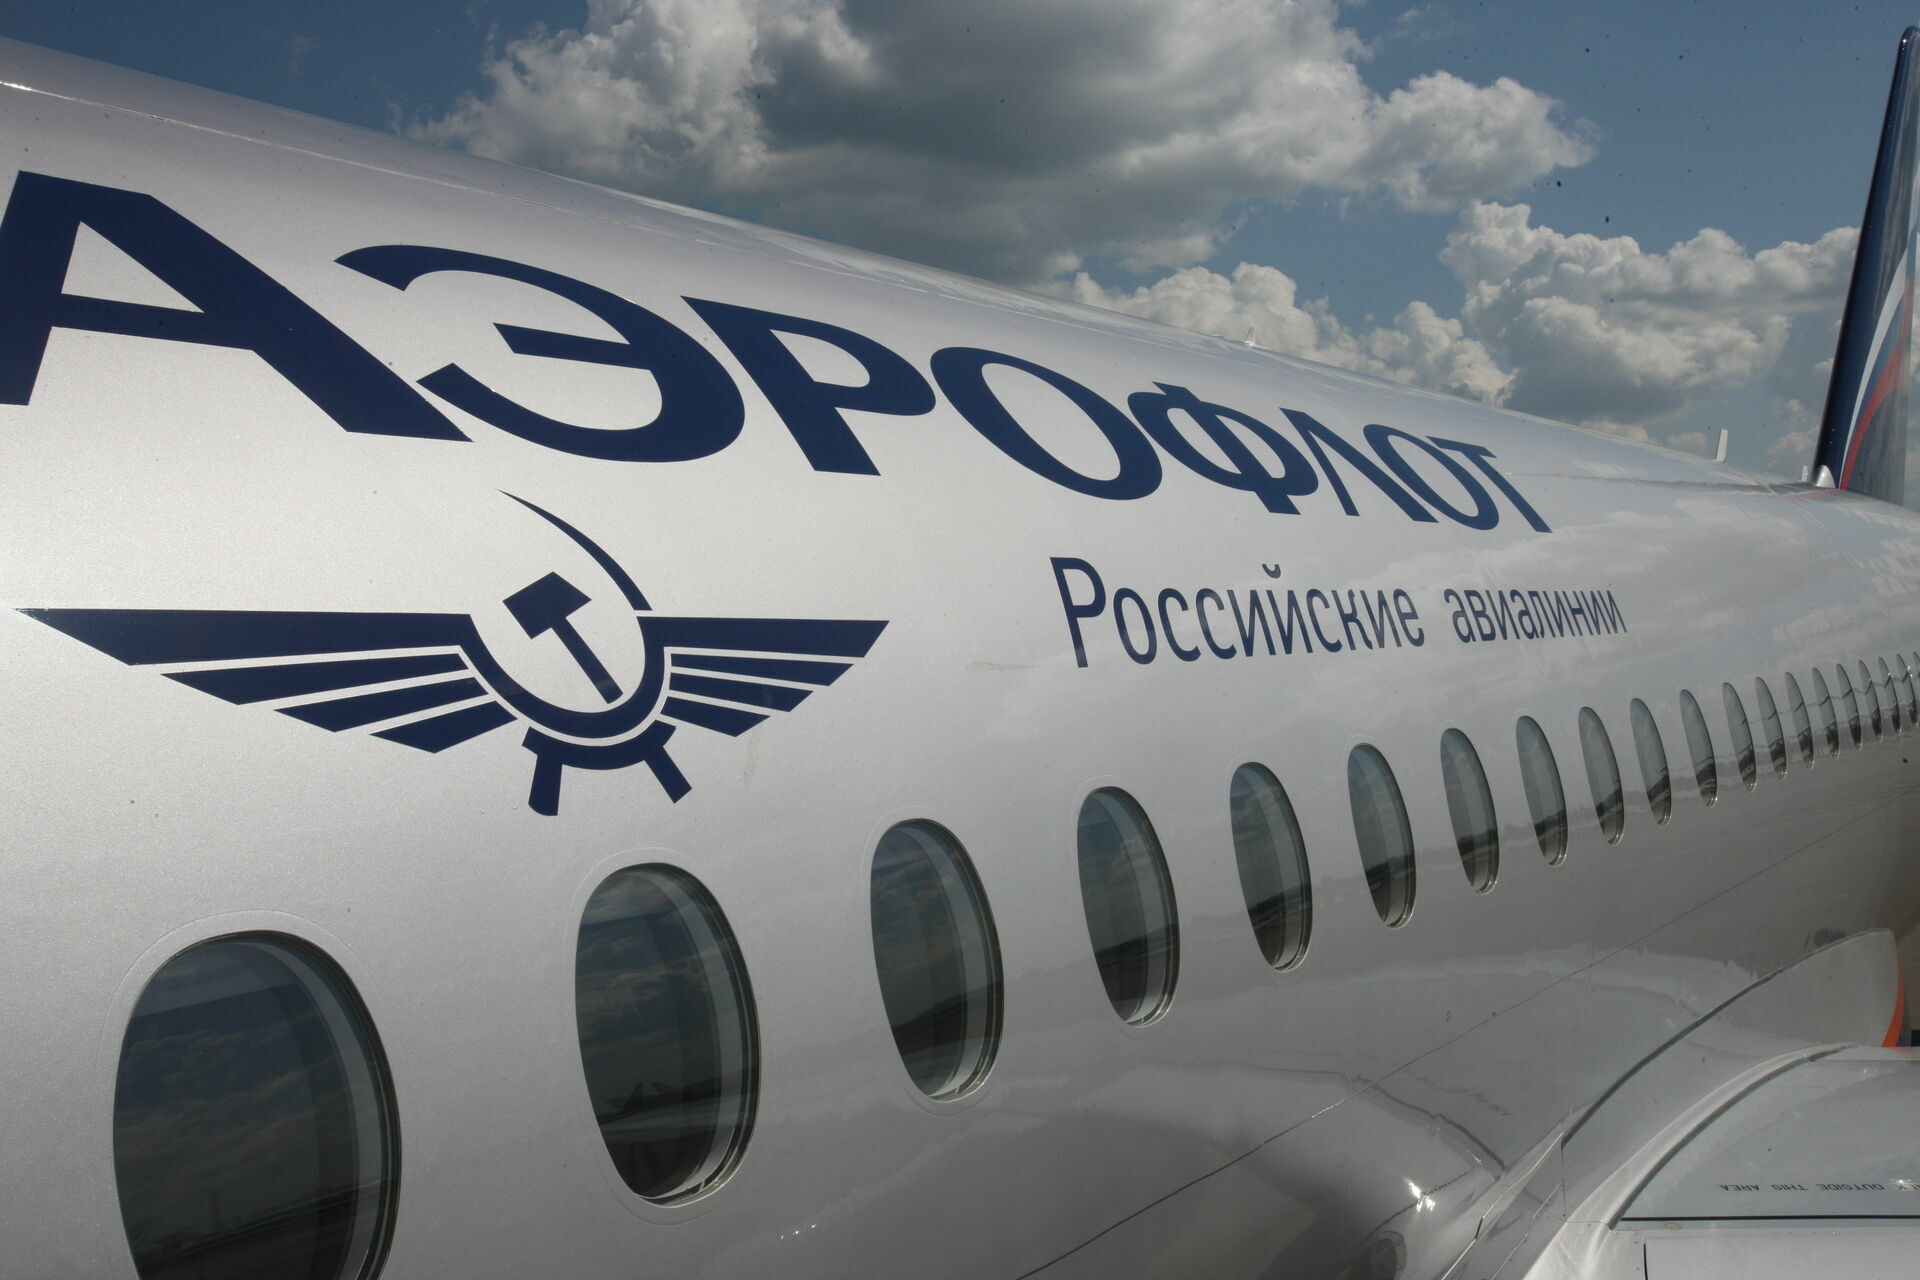 Аэрофлот открыл программу корпоративной лояльности для иностранных компаний